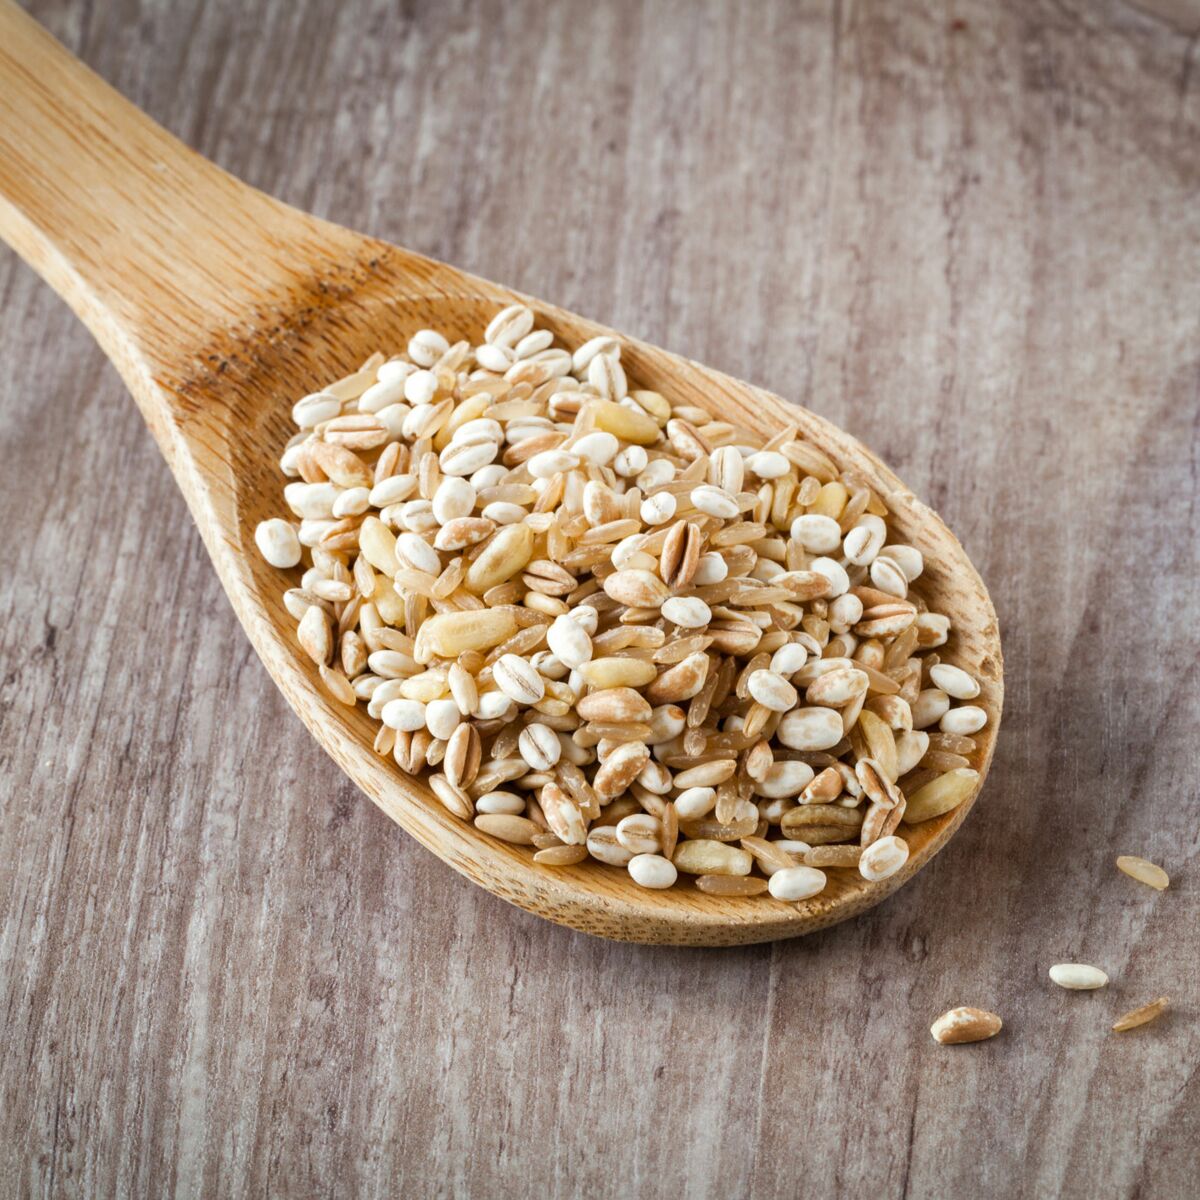 Le blé et ses produits : intolérance au gluten et surpoids